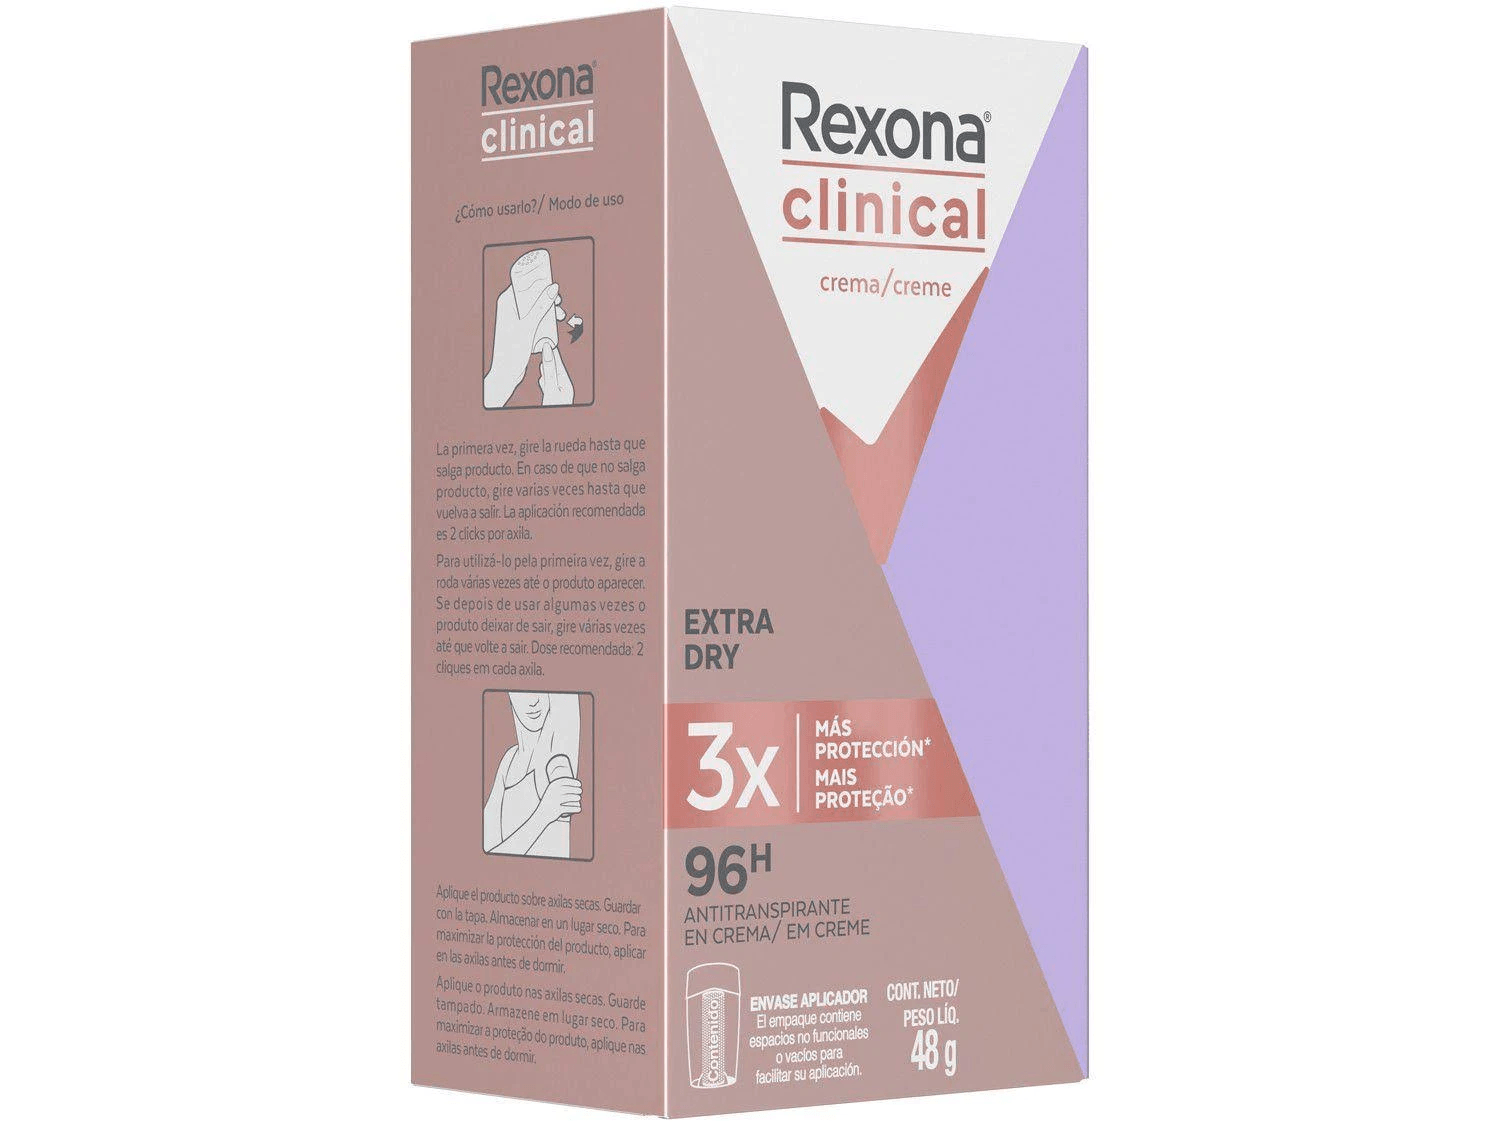 Rexona Clinical Crema 48 Gr. – Brasil Eu Quero!